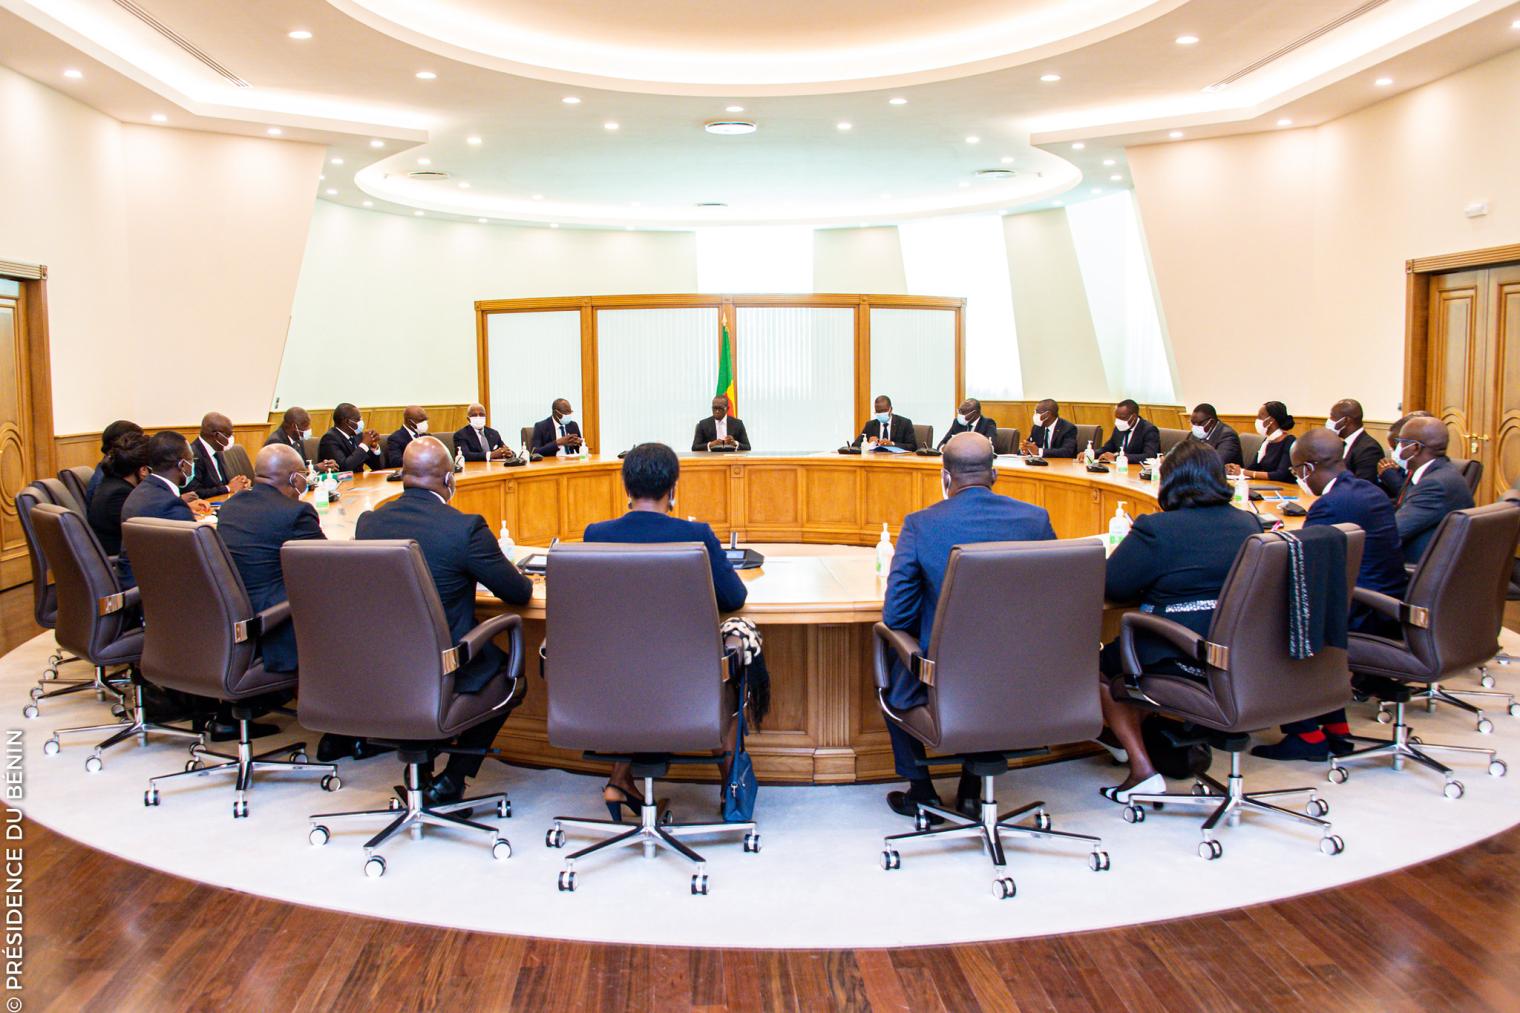 Bénin – Conseil des ministres : compte rendu de la session du 1er février 2023